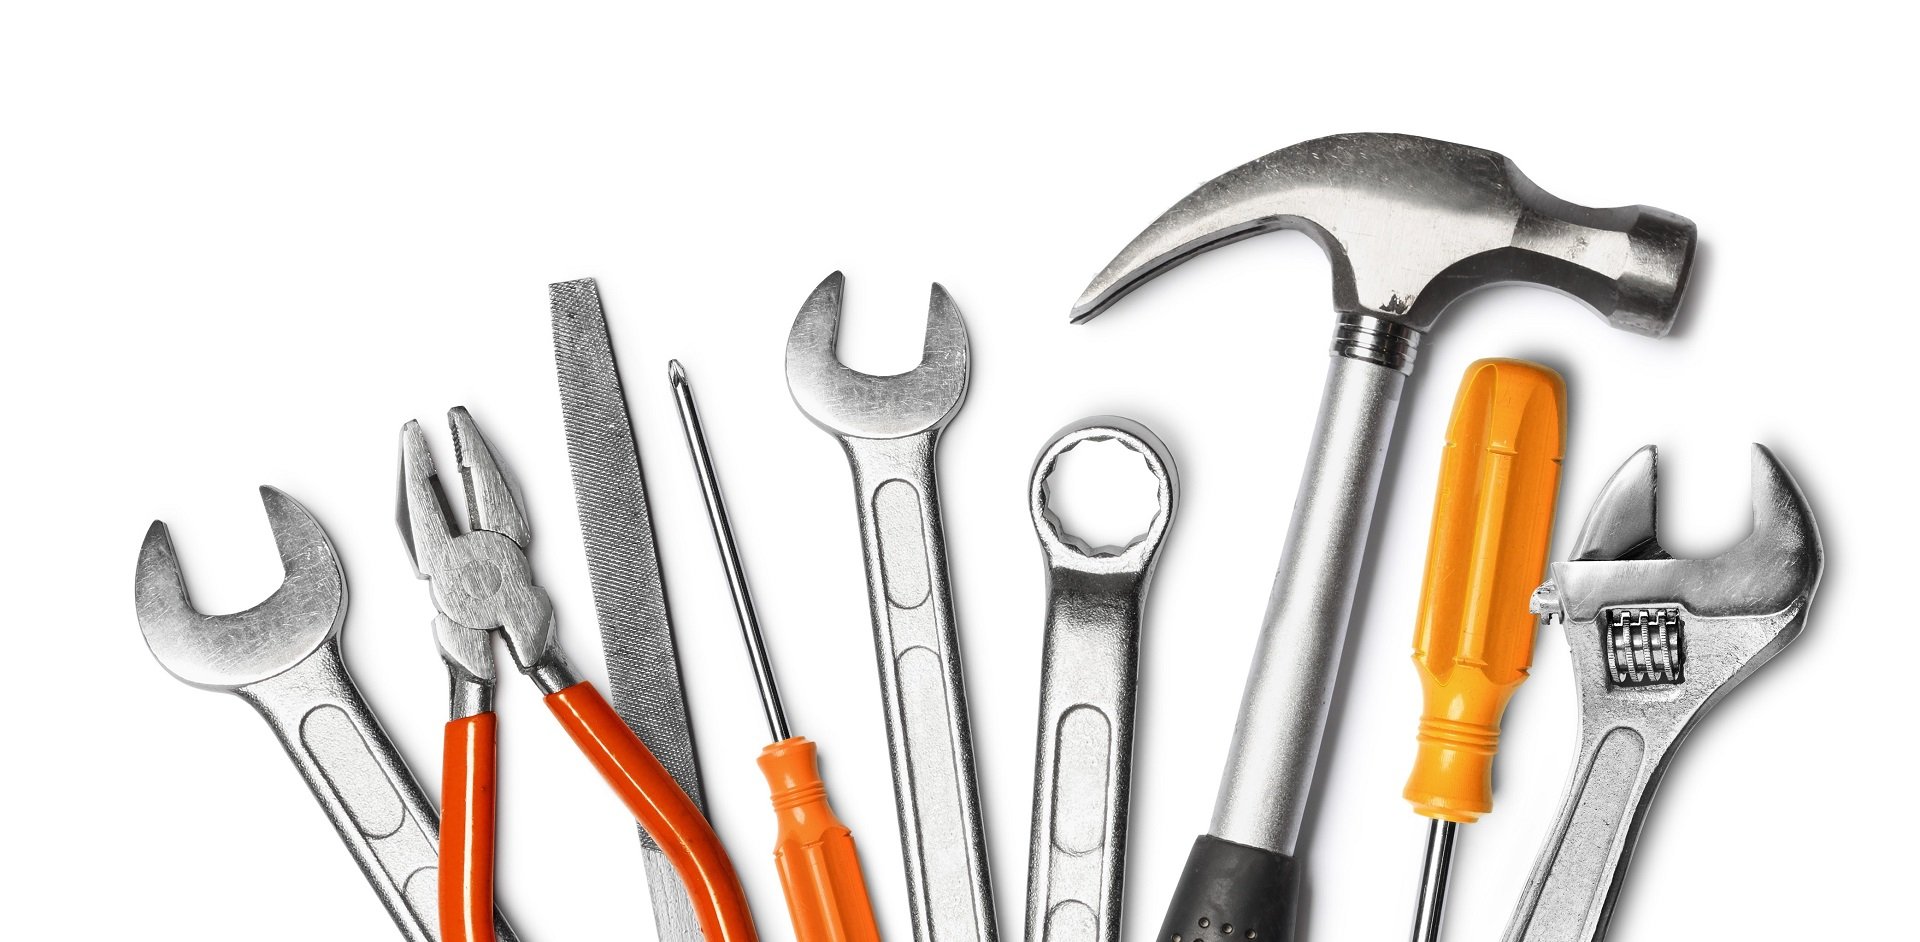 Items tools. Строительные инструменты. Ручной инструмент. Слесарный инструмент. Инструменты для стройки.